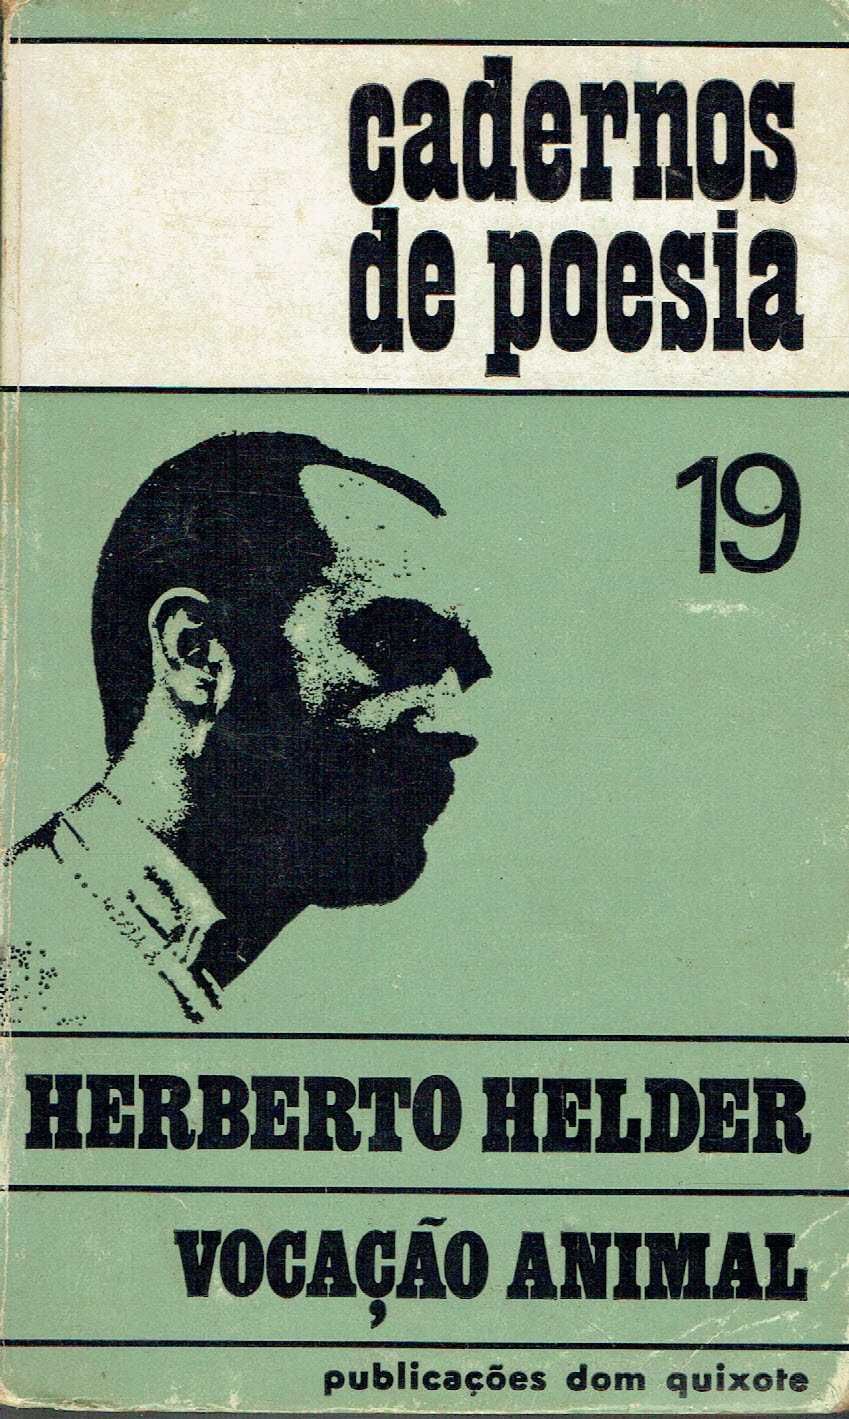 14823

VOCAÇÃO ANIMAL
de Herberto Helder